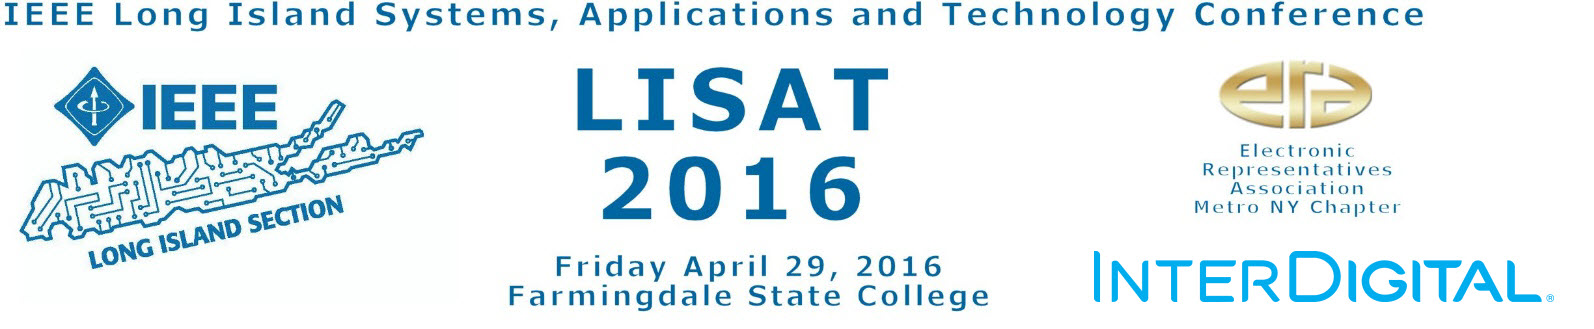 LISAT Conference 2016